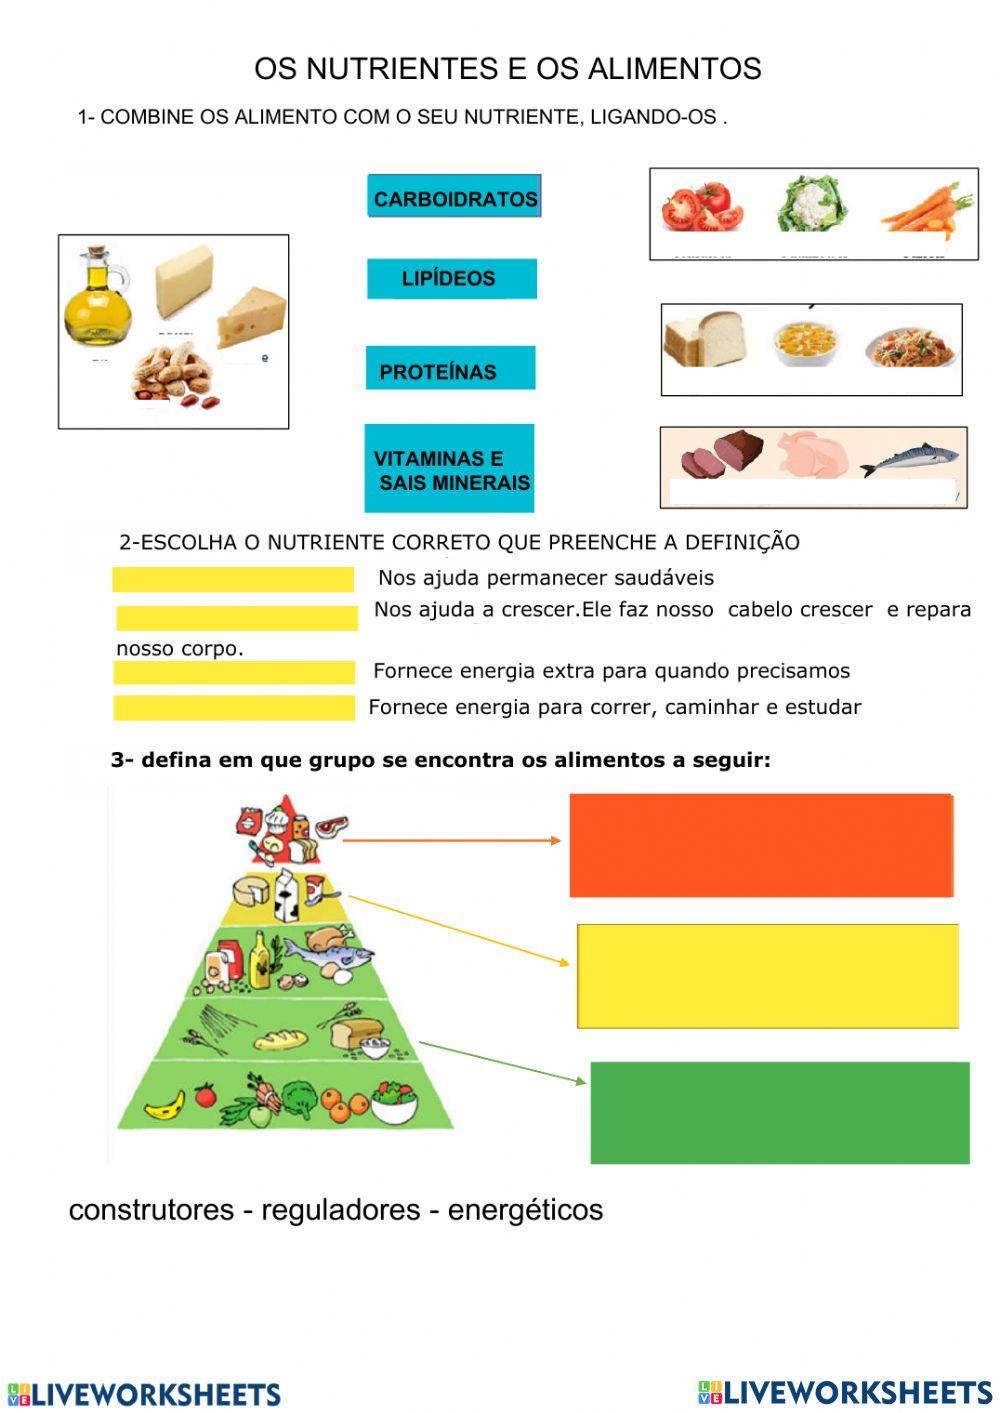 Alimentos e nutrientes